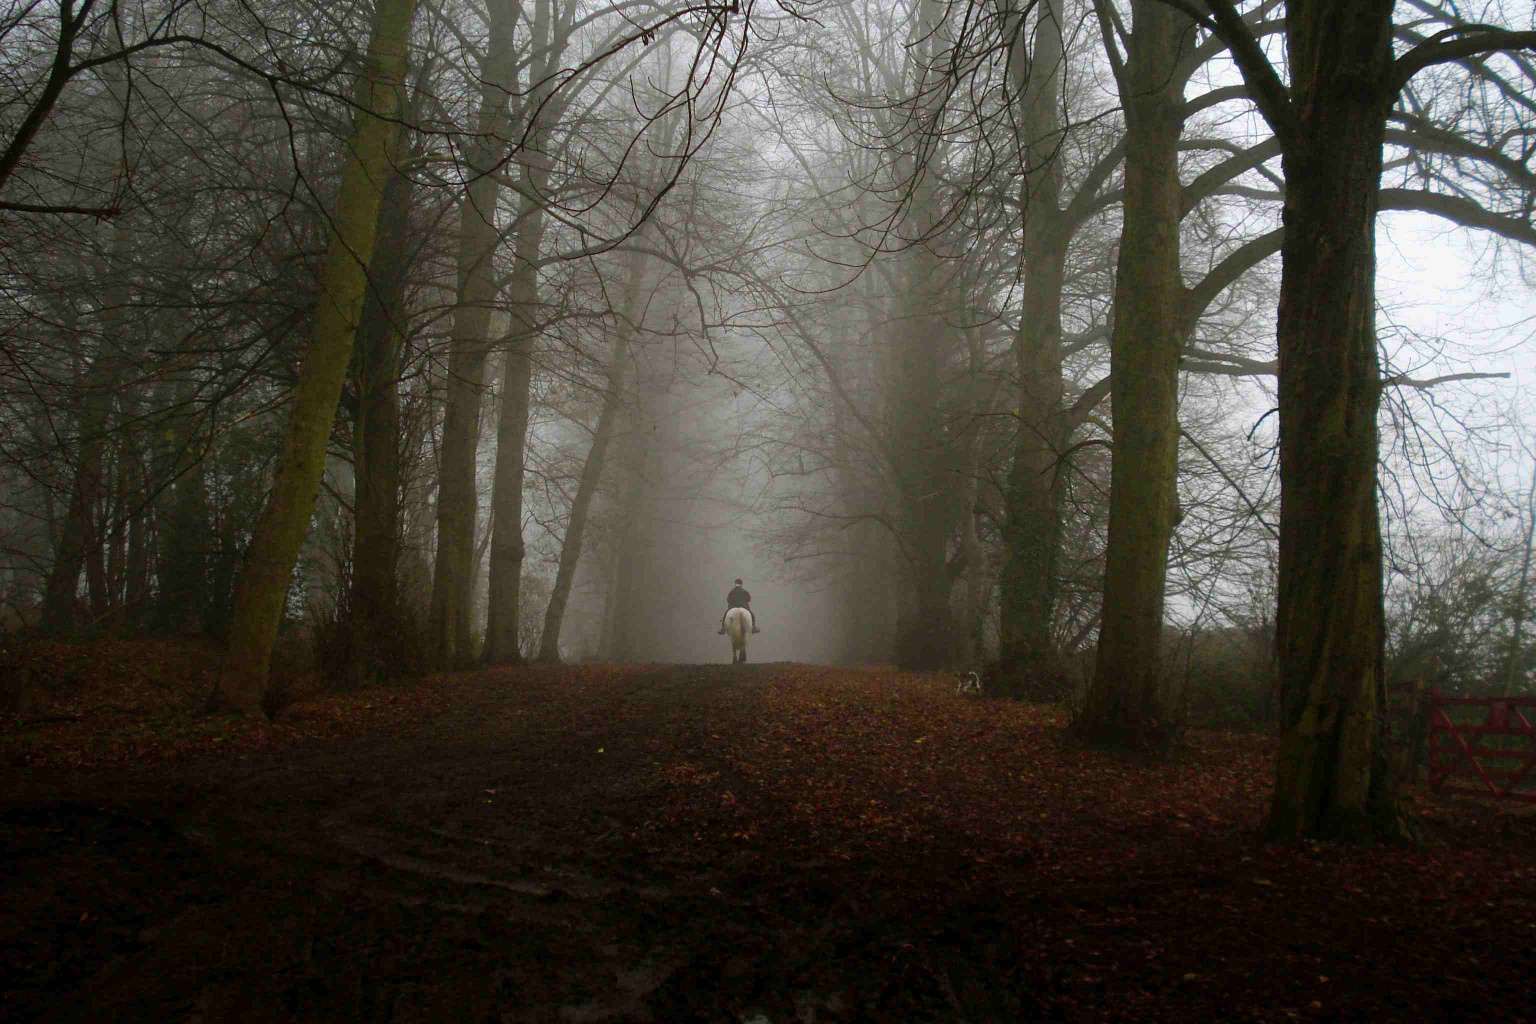 Dering (skrigende) Woods, Ashford, England